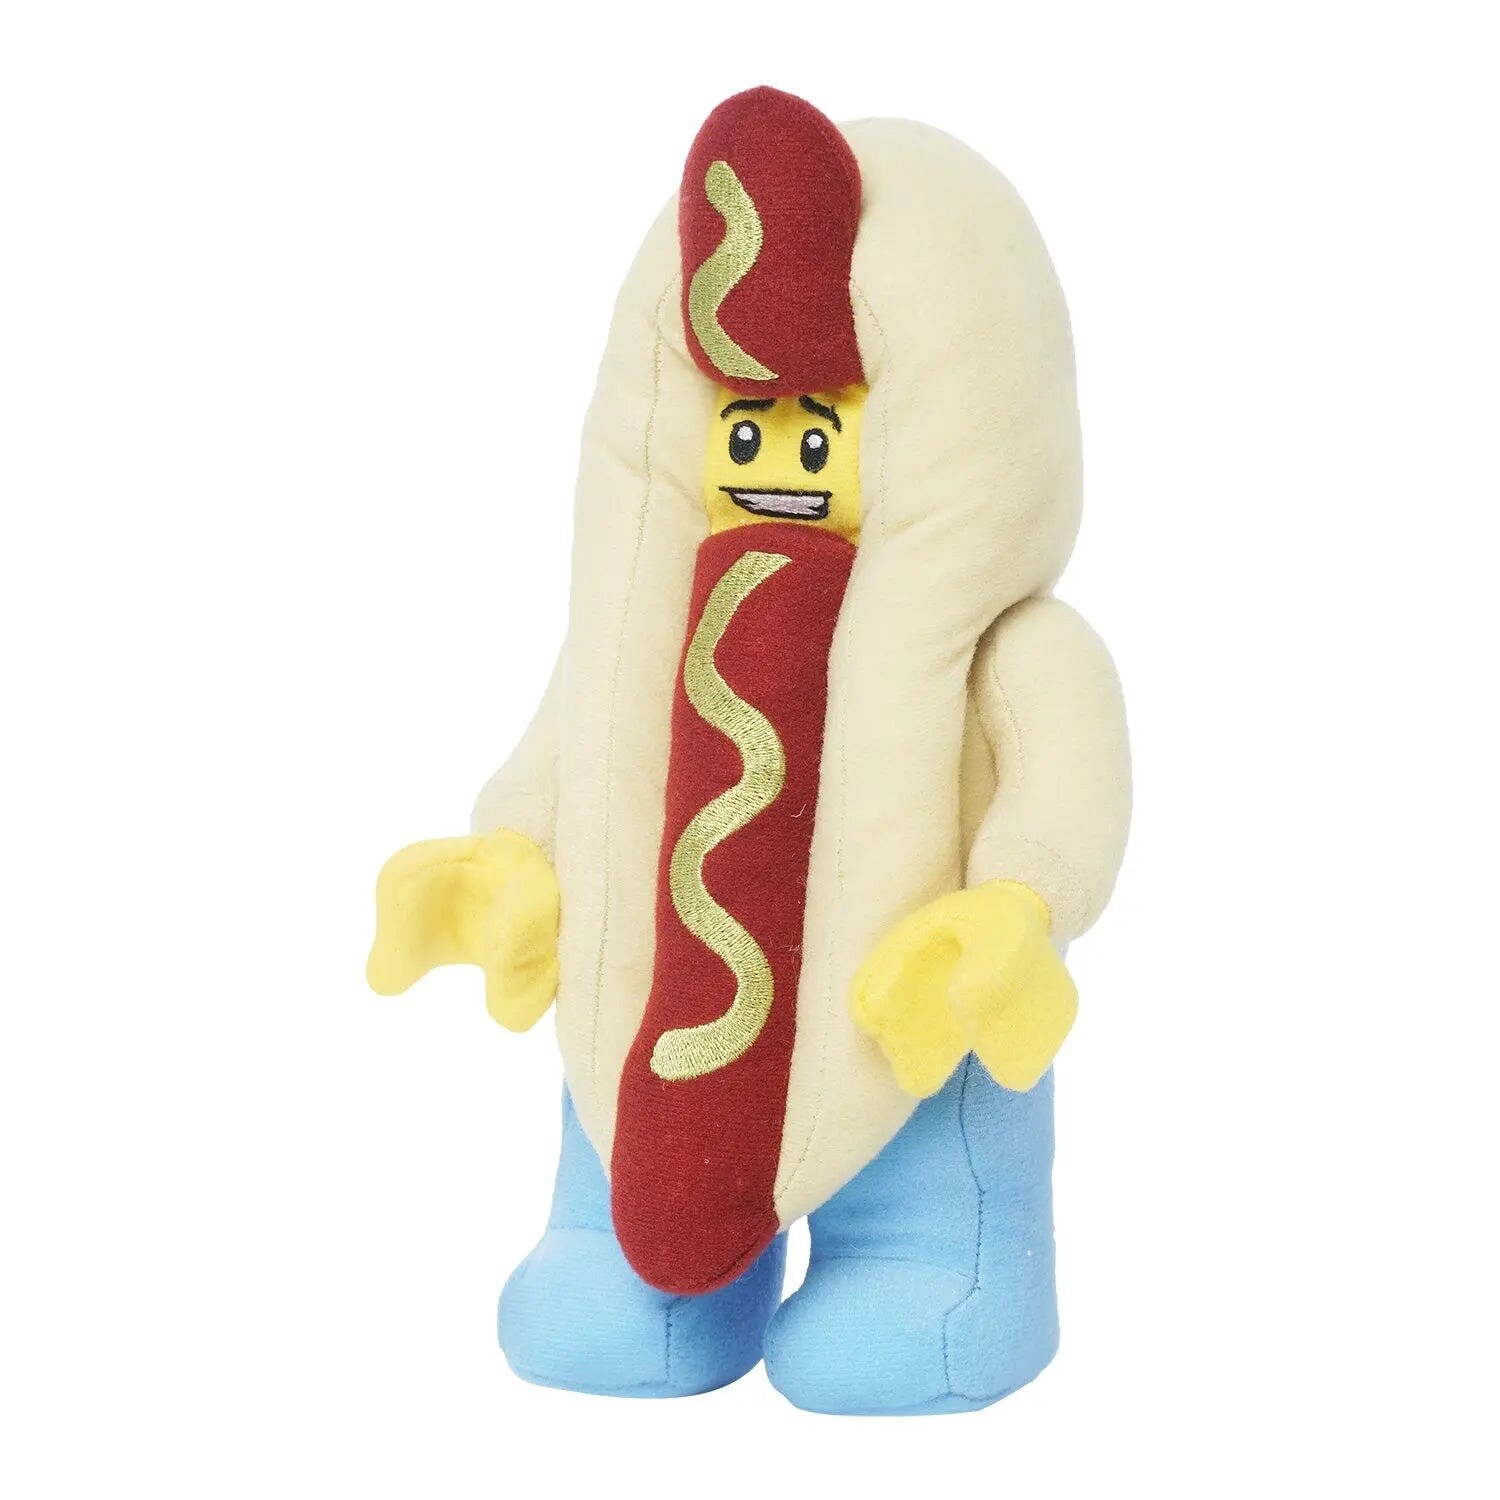 Lego Hot Dog Guy MiniFigure Plush (Small)